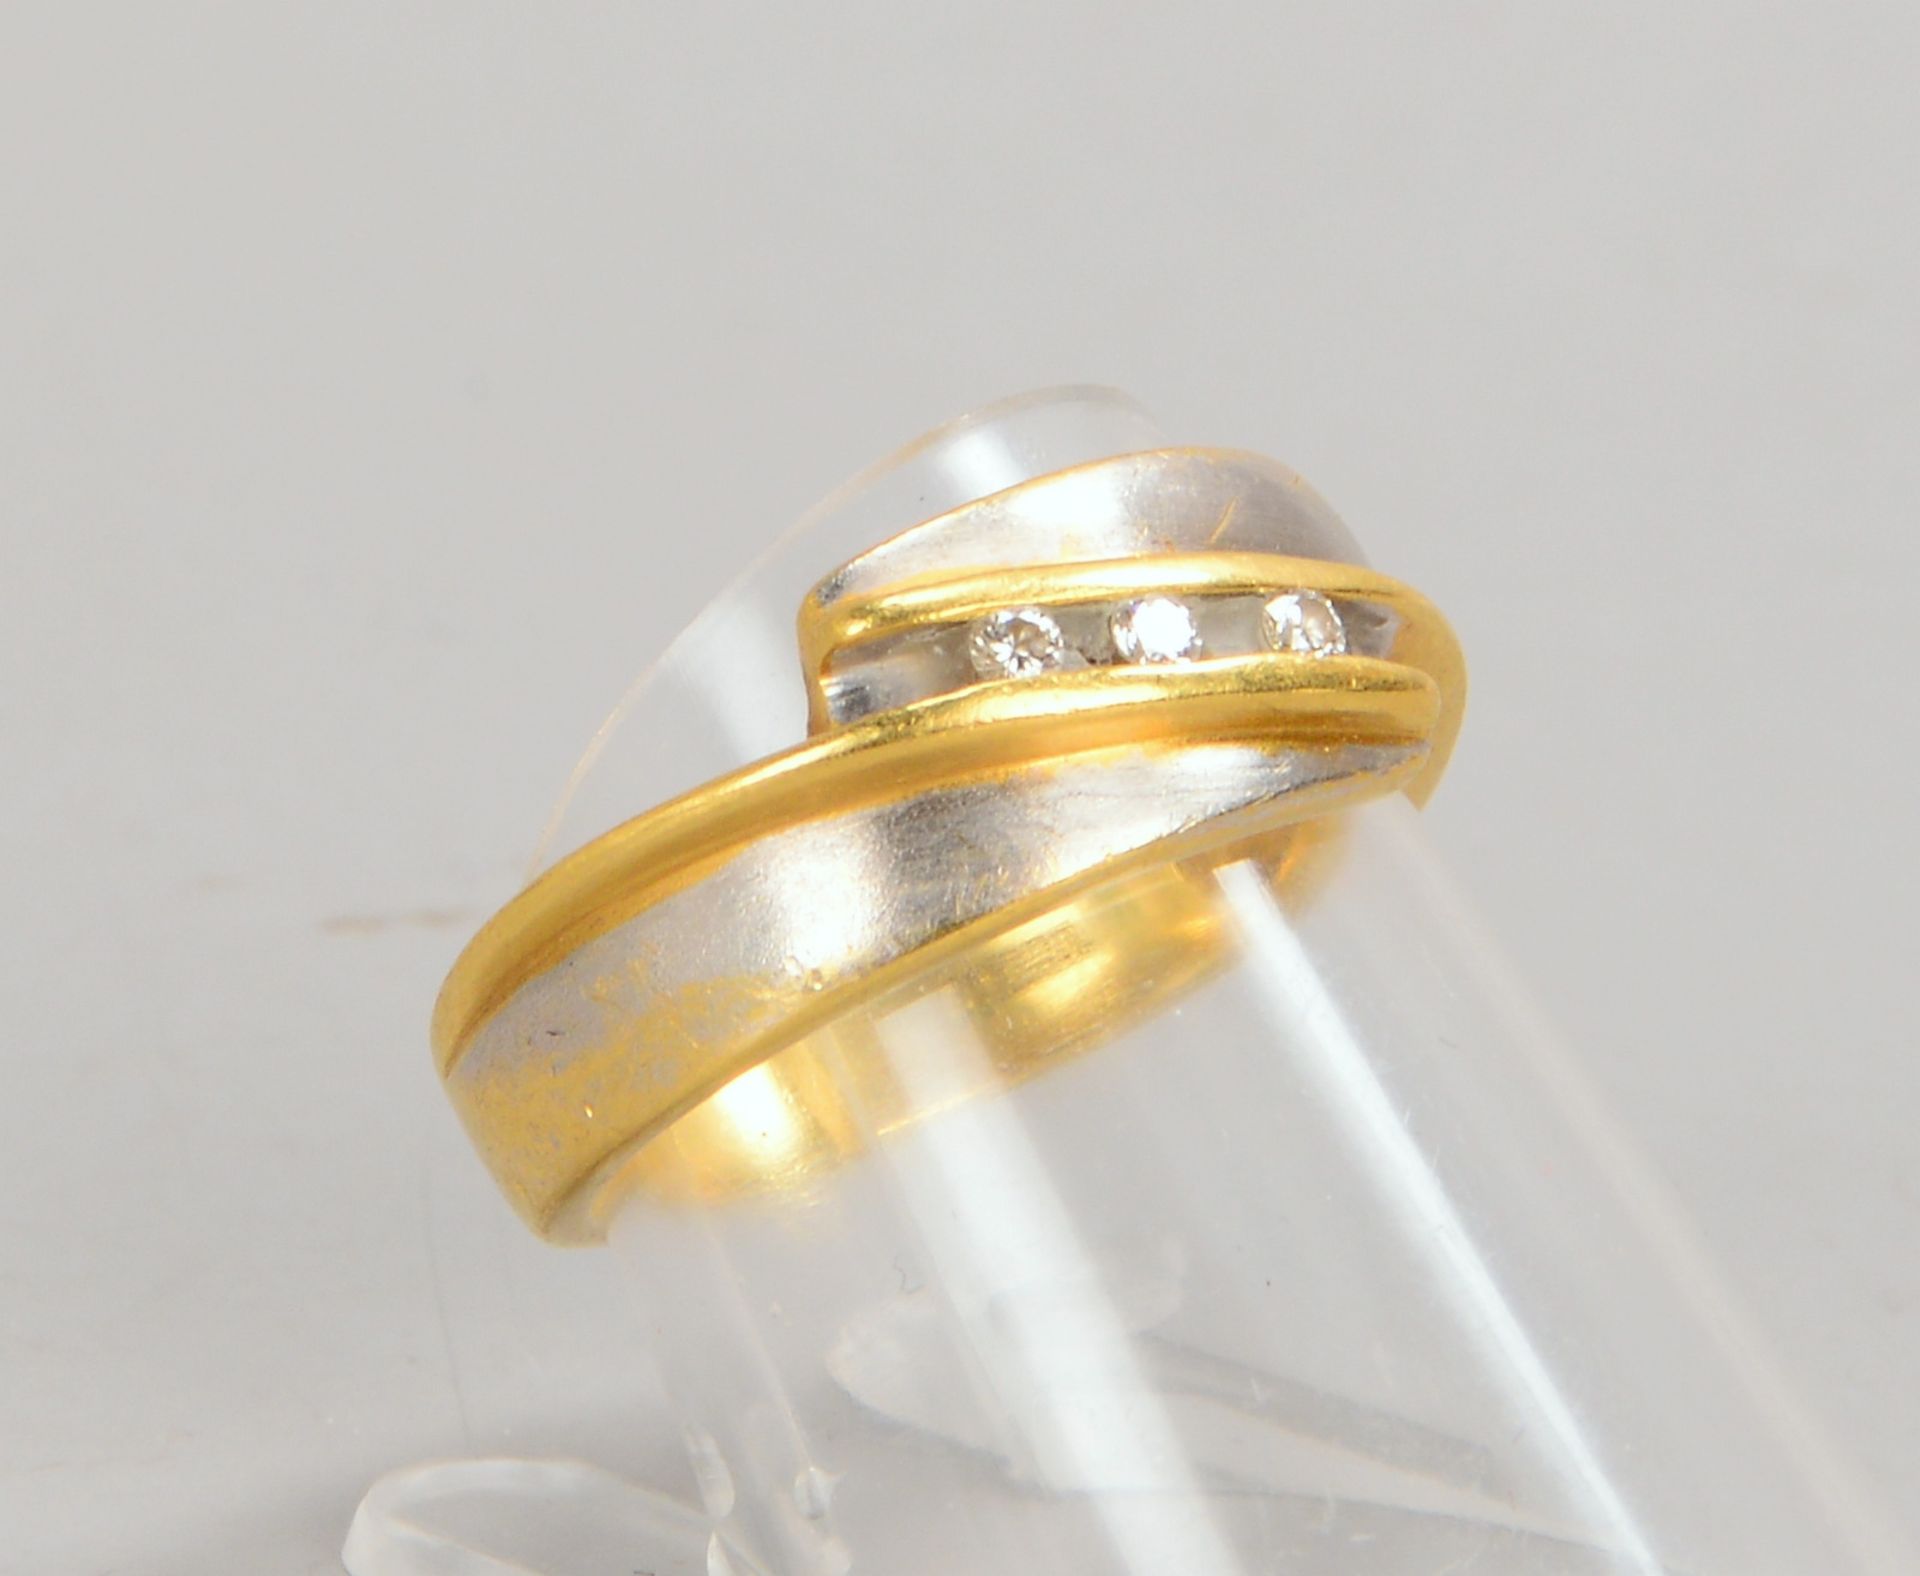 Ring (Goldschmiedearbeit), 750 GG (gest.), teils rhodiniert, mit 3x kl. Brill.